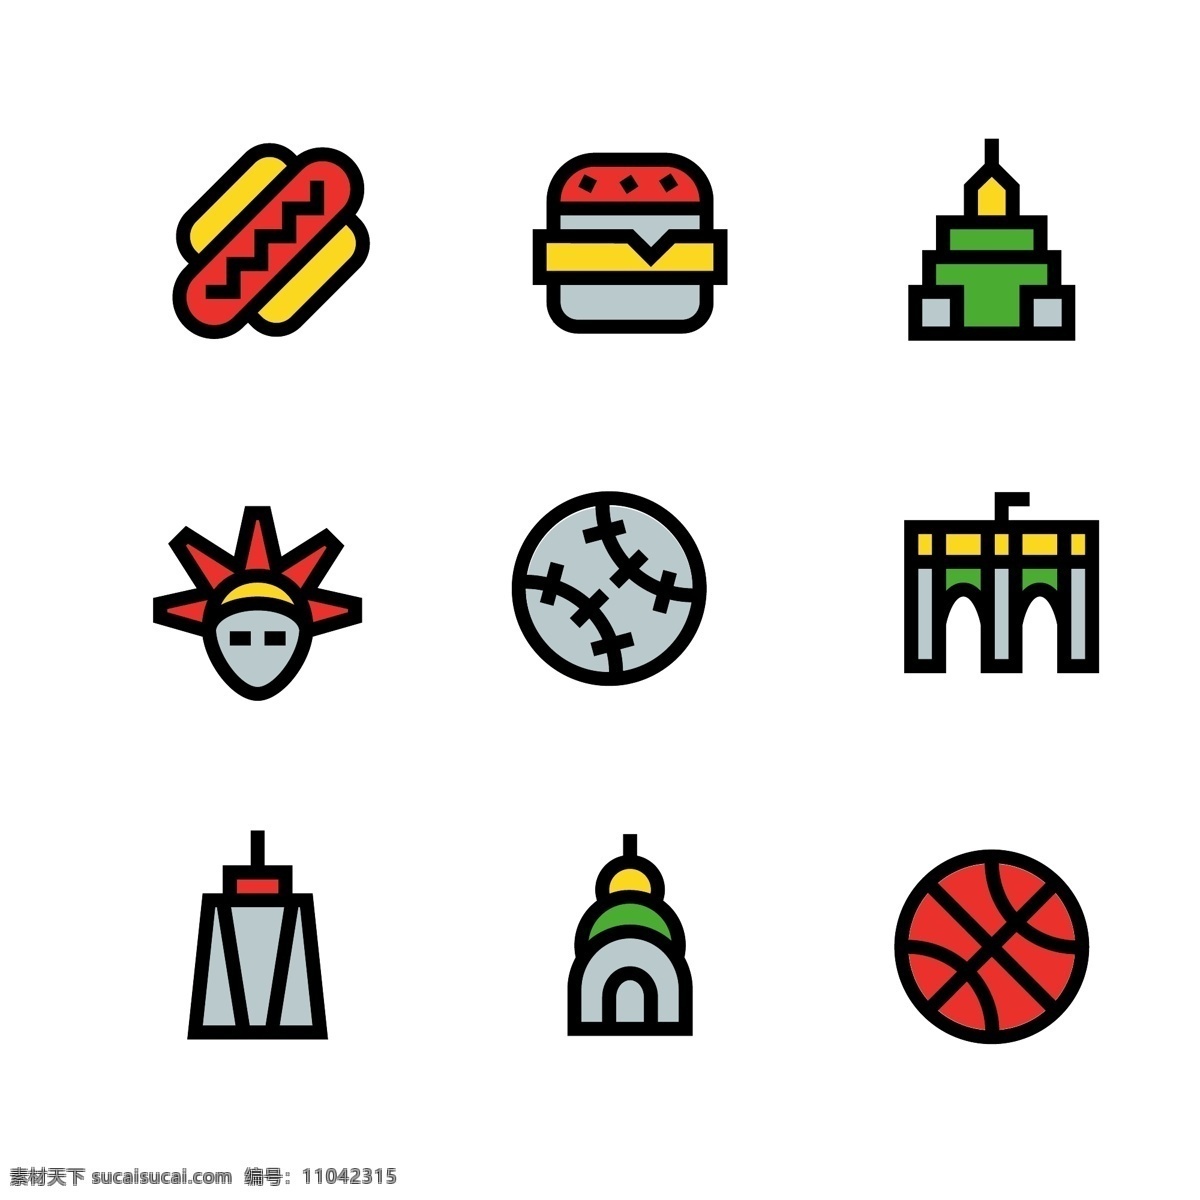 矢量 简洁 纽约 风格 图标 原创 商用 元素 汉堡 篮球 自由女神 建筑 大桥 棒球 热狗 描边 风情